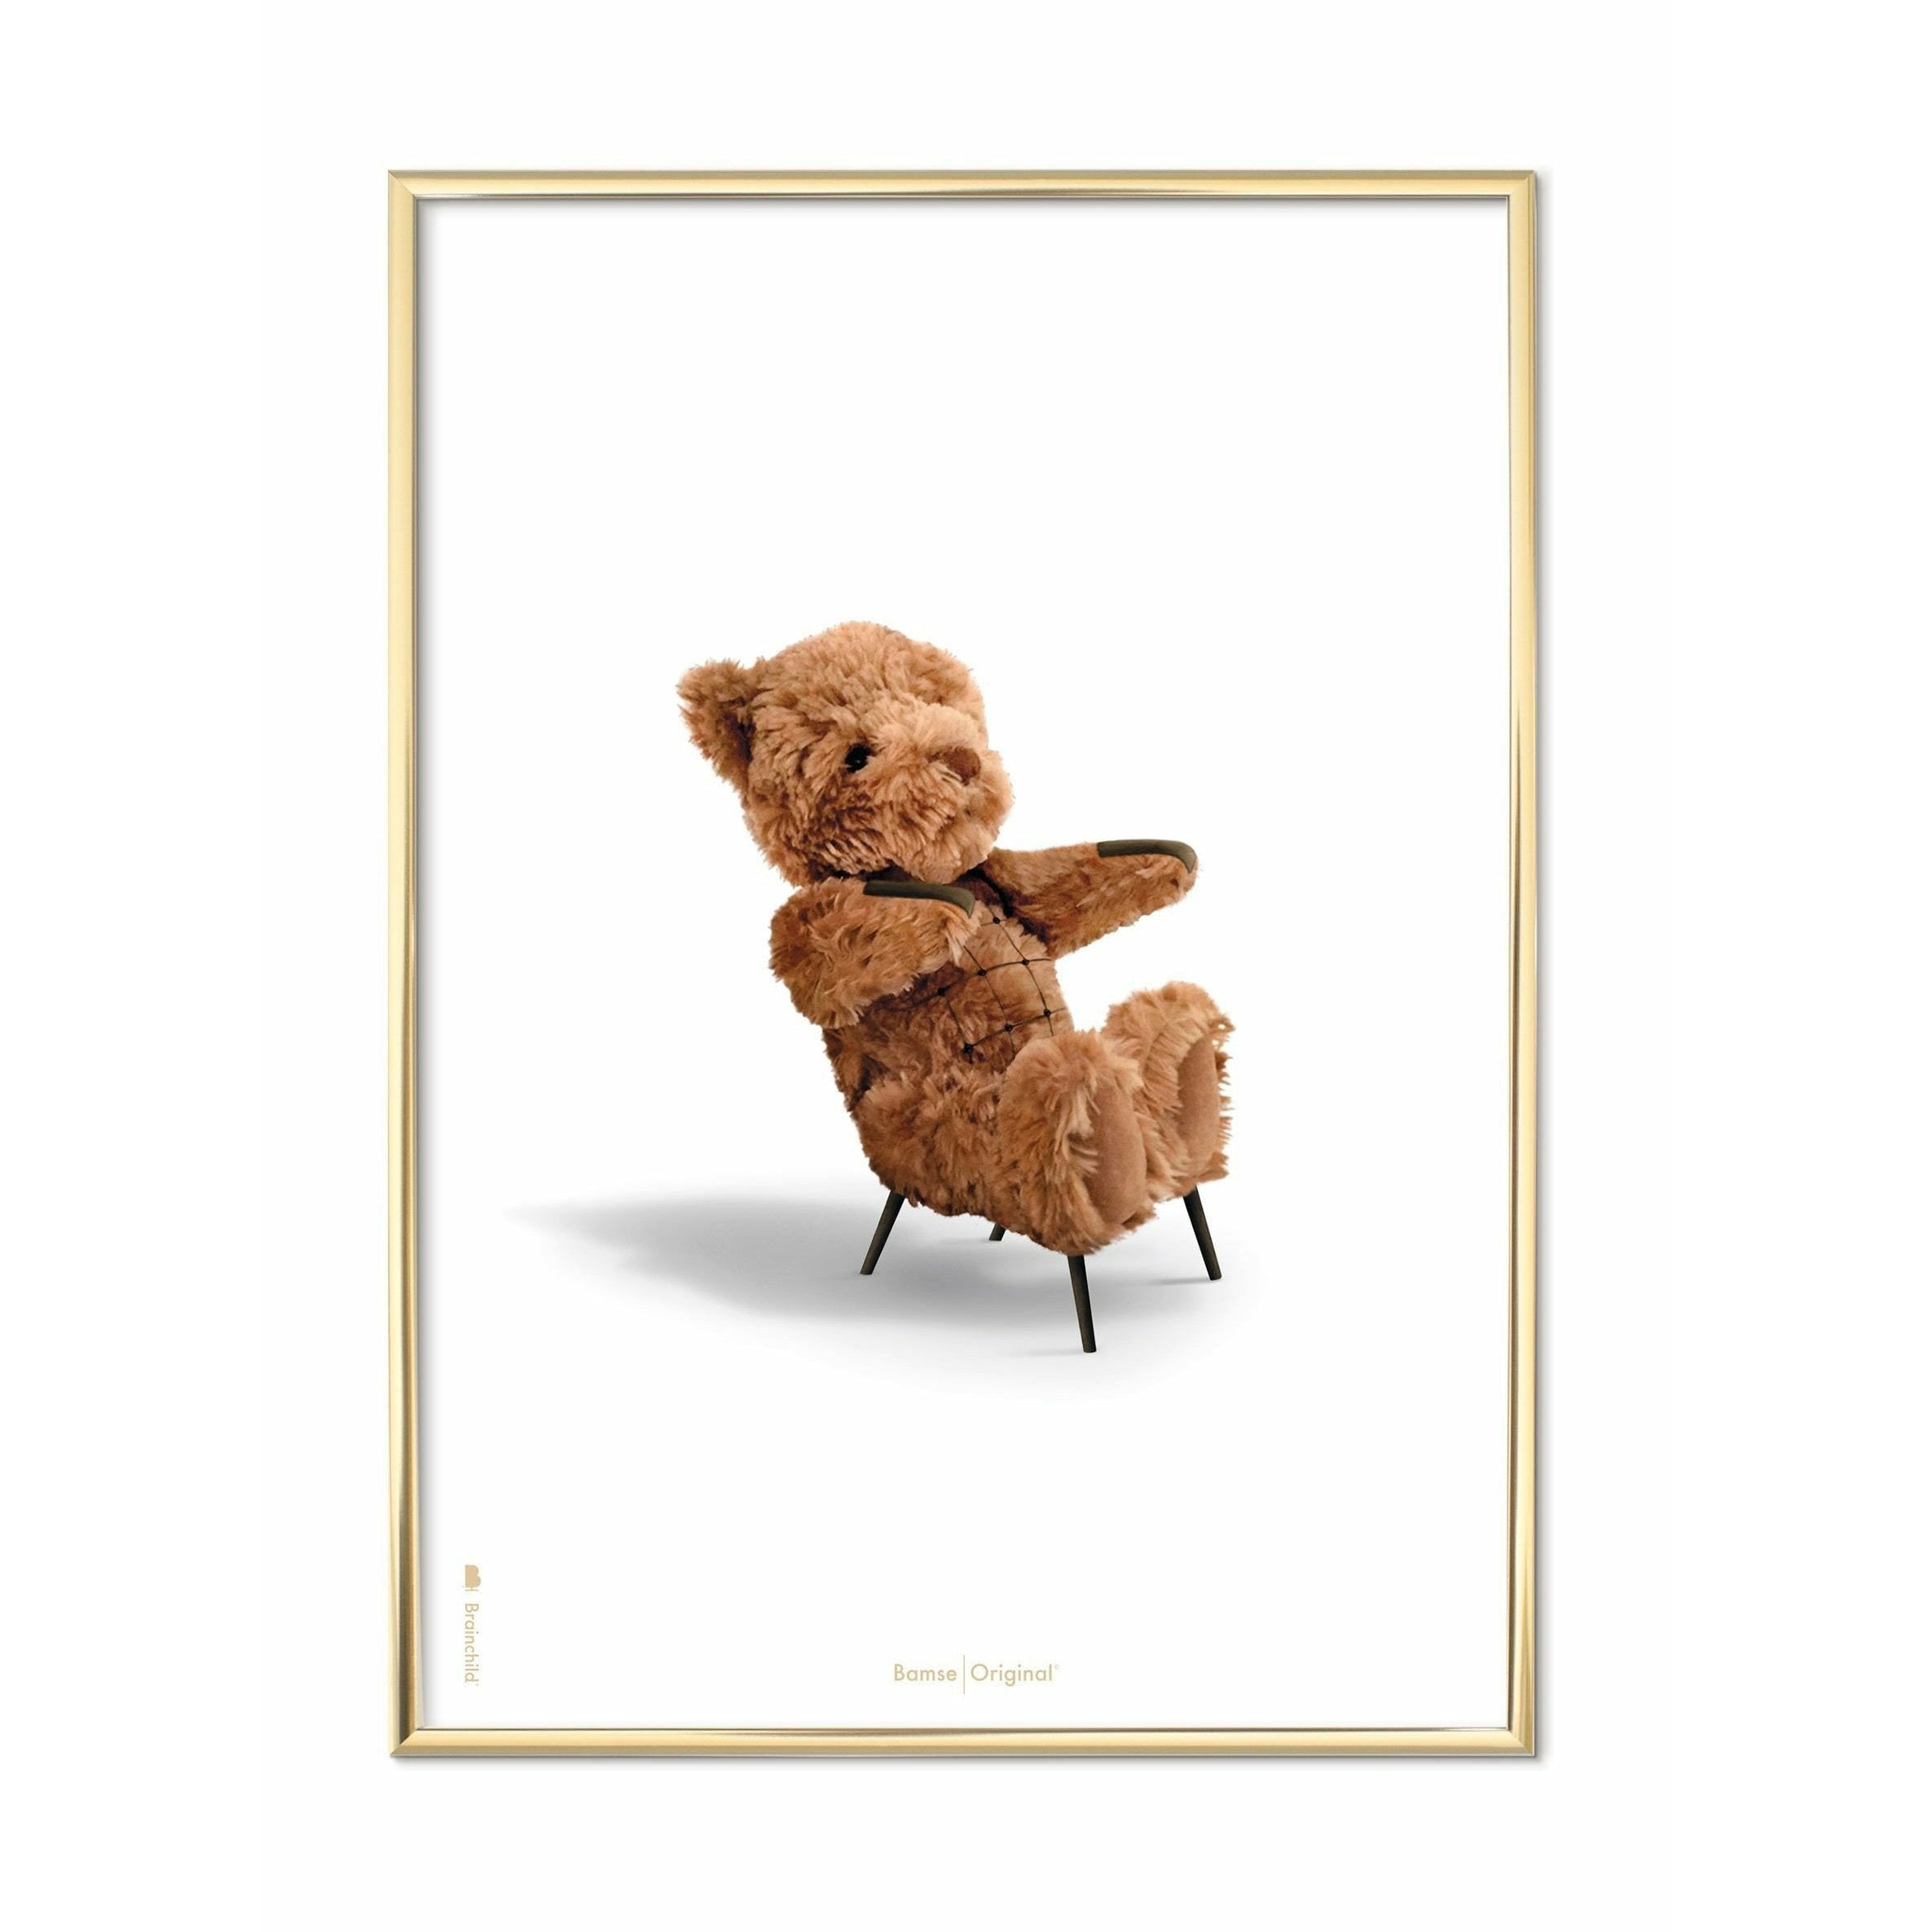 Brainchild Teddybär Classic Poster, messingfarbener Rahmen 70 x 100 cm, weißer Hintergrund